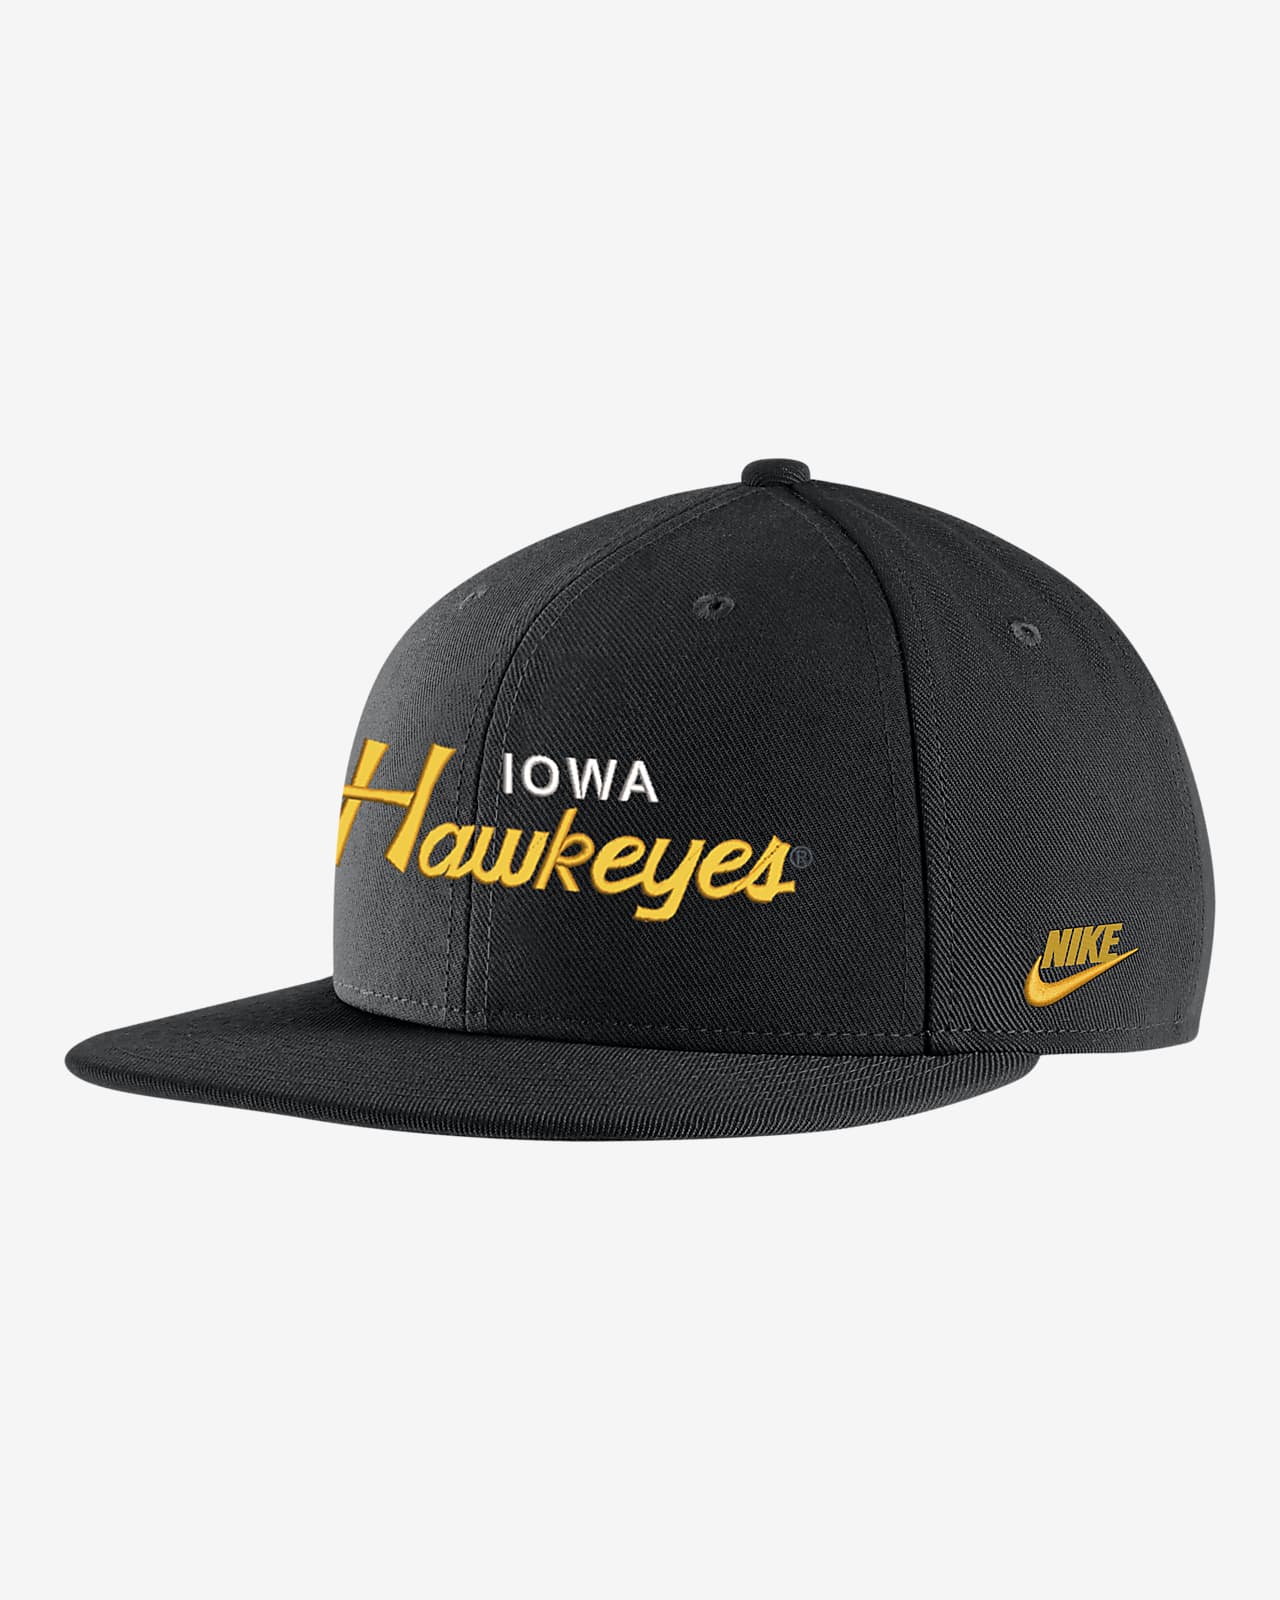 Gorra universitaria Nike Iowa